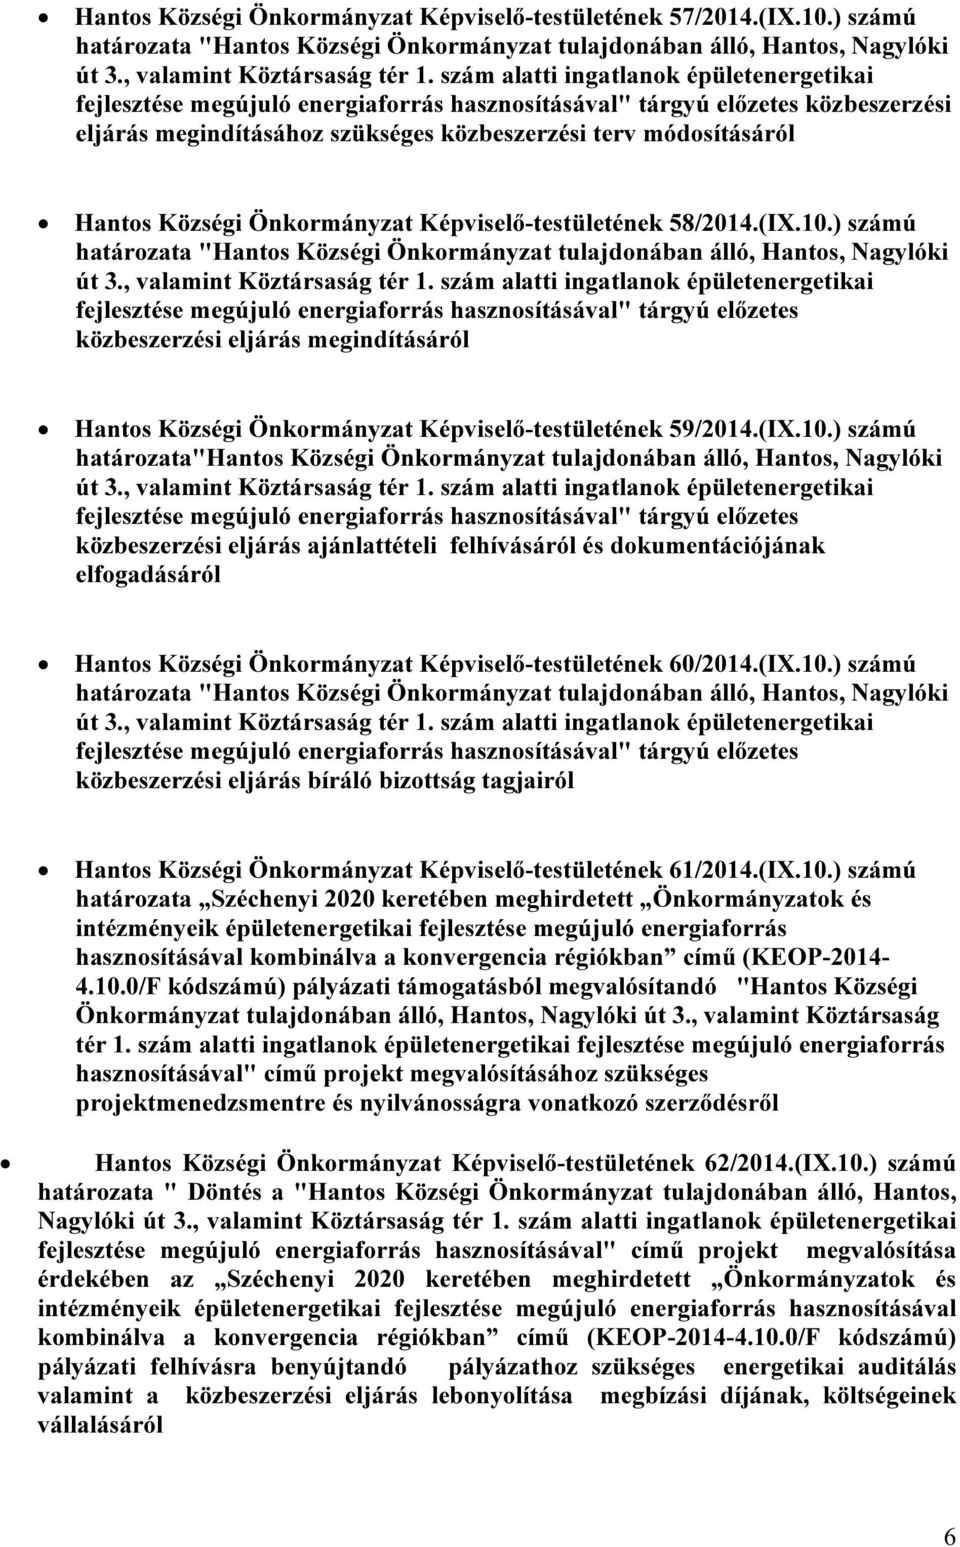 Községi Önkormányzat Képviselő-testületének 58/2014.(IX.10.) számú határozata "Hantos Községi Önkormányzat tulajdonában álló, Hantos, Nagylóki út 3., valamint Köztársaság tér 1.